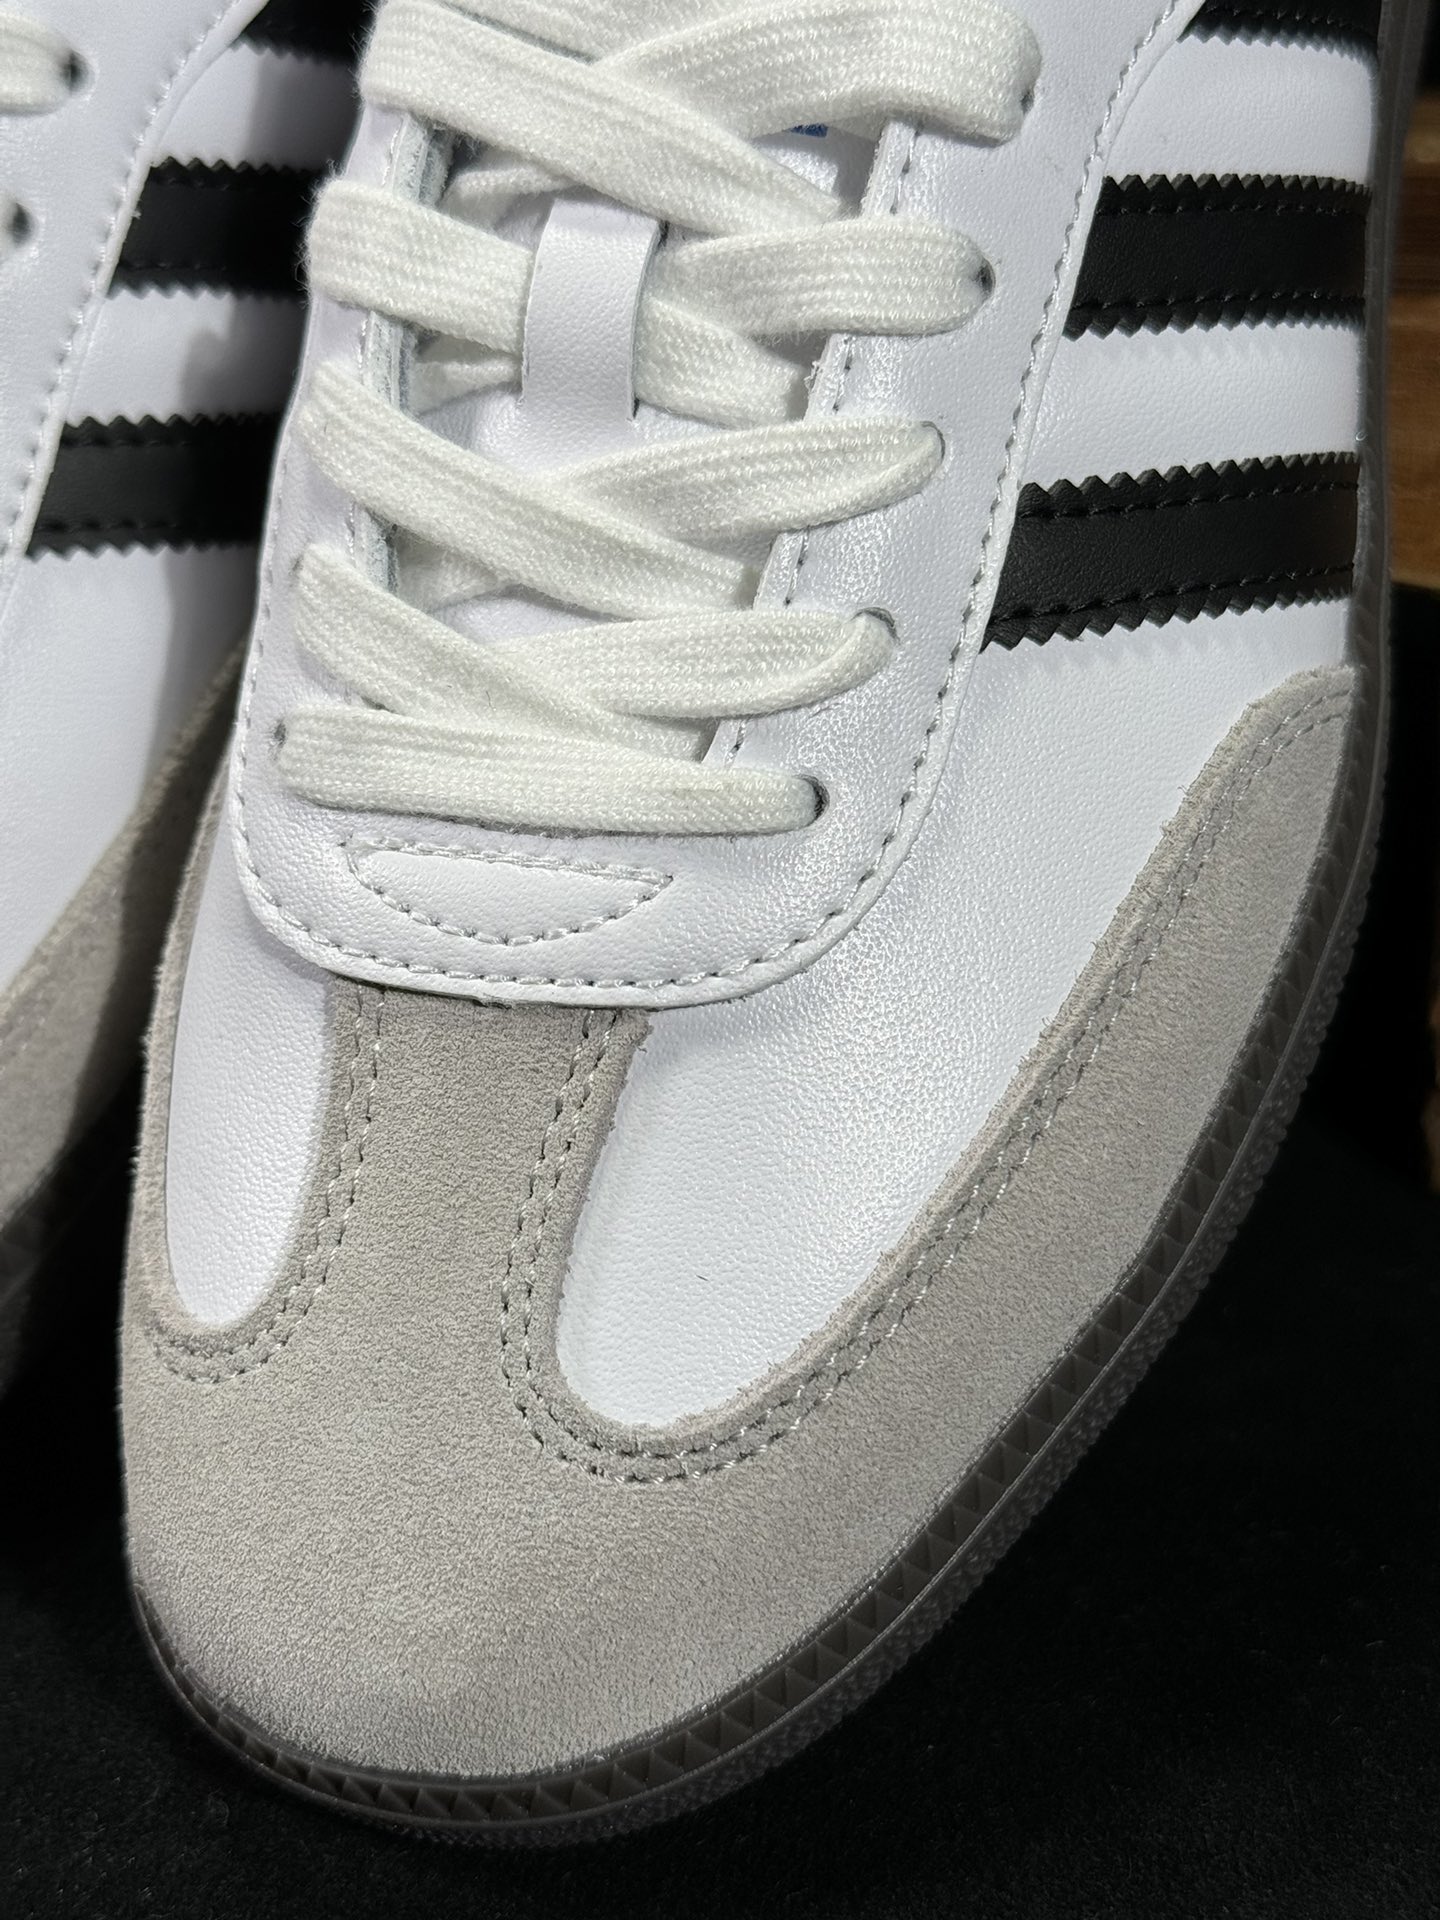 阿迪桑巴德训鞋白色Adidas/阿迪达斯SAMBAVEGAN黑白男女低帮经典运动鞋板鞋B75806尺码3